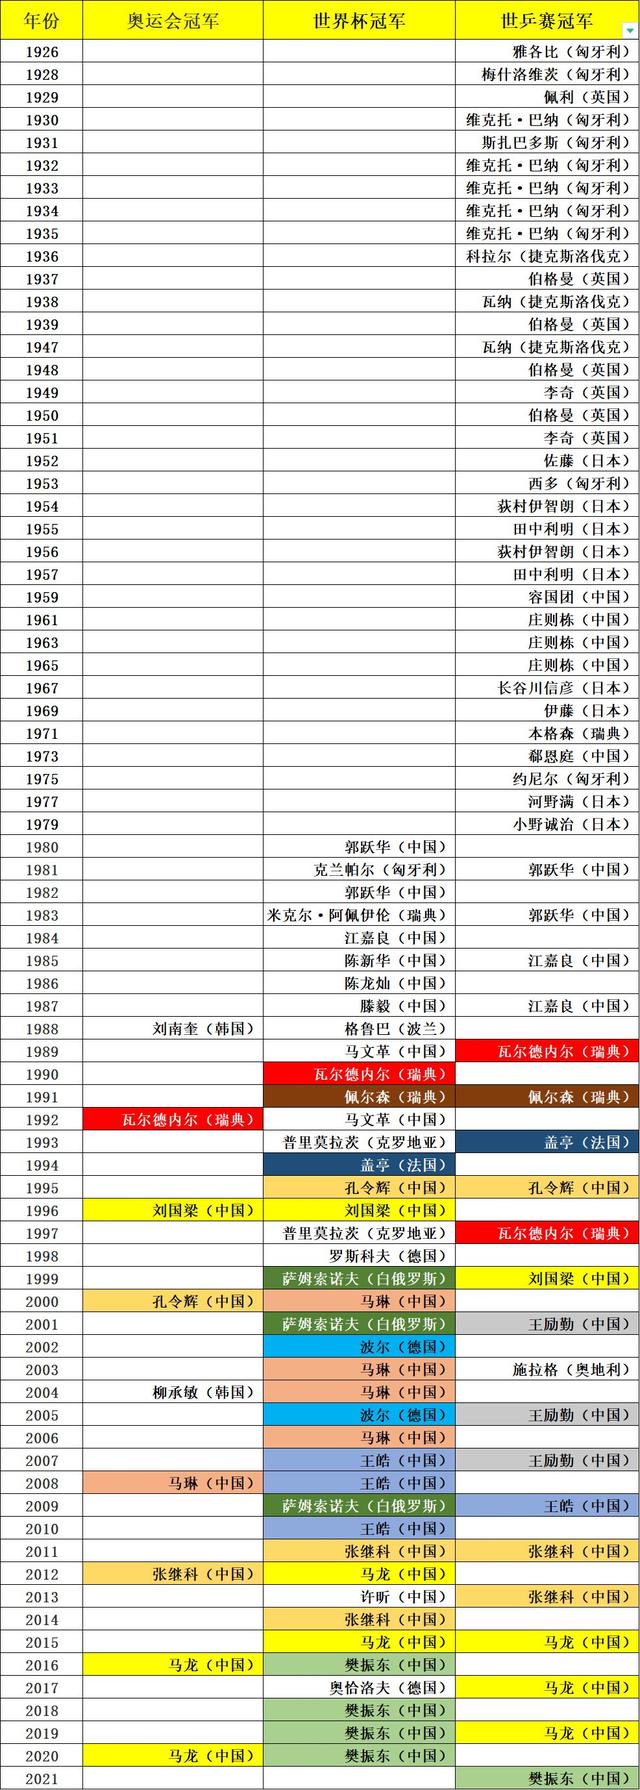 乒乓球大满贯都有谁，乒乓球三大赛历届冠军统计（截止2021赛季）-5.jpg